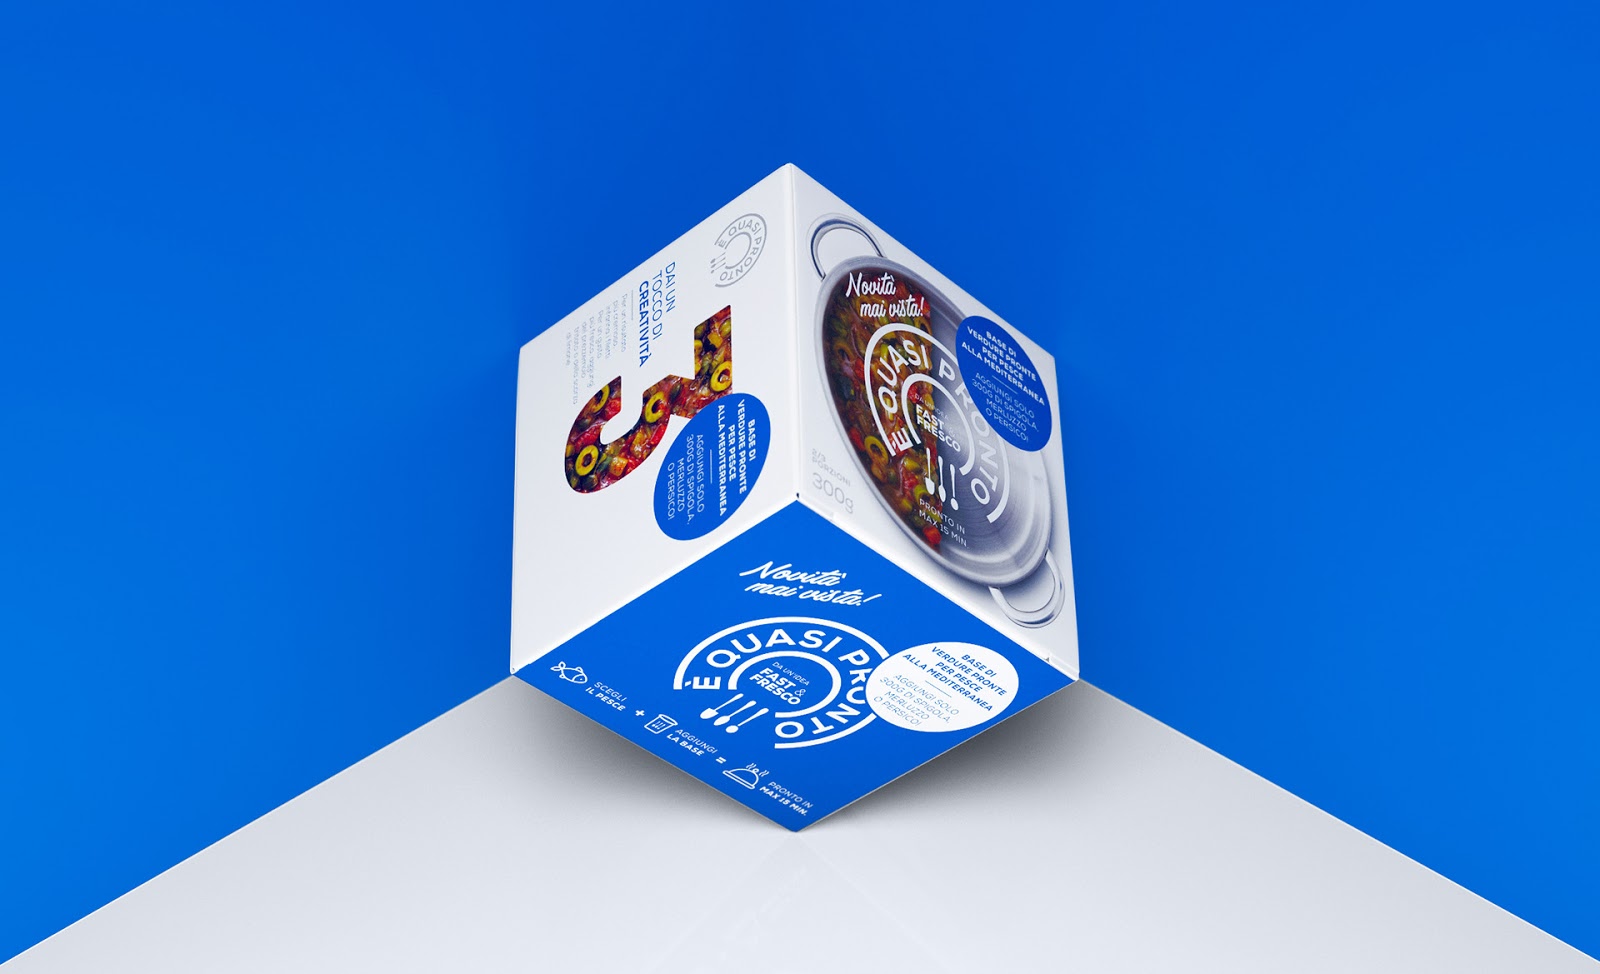 意大利烹饪料西安oe欧亿体育app官方下载
品牌包装设计